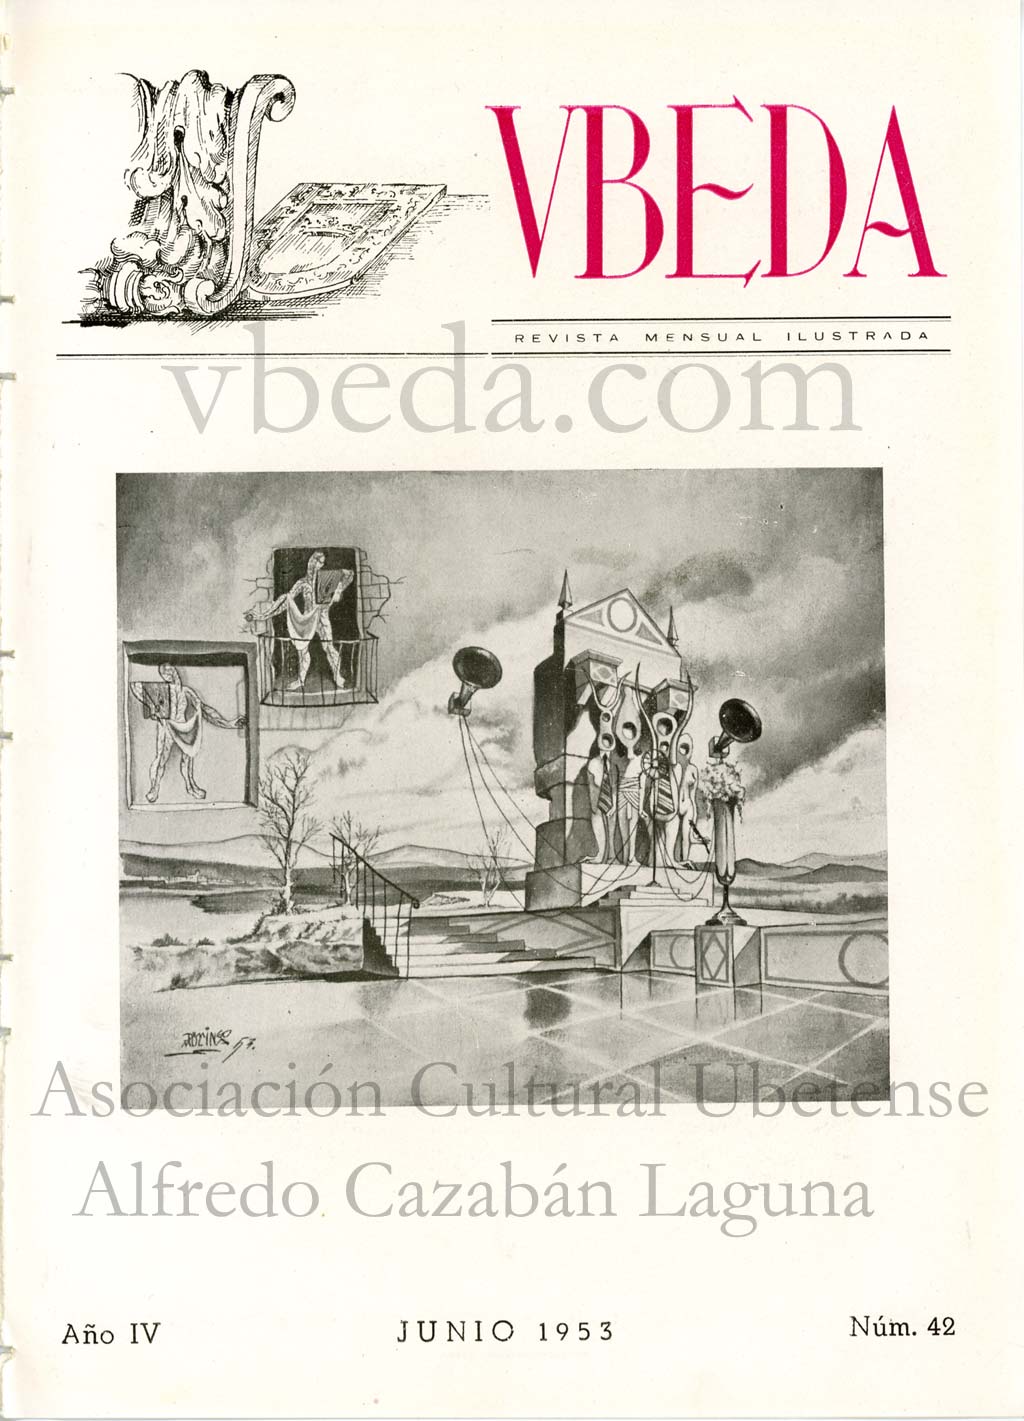 Revista Vbeda. Ao 4. N 42 de junio de 1953